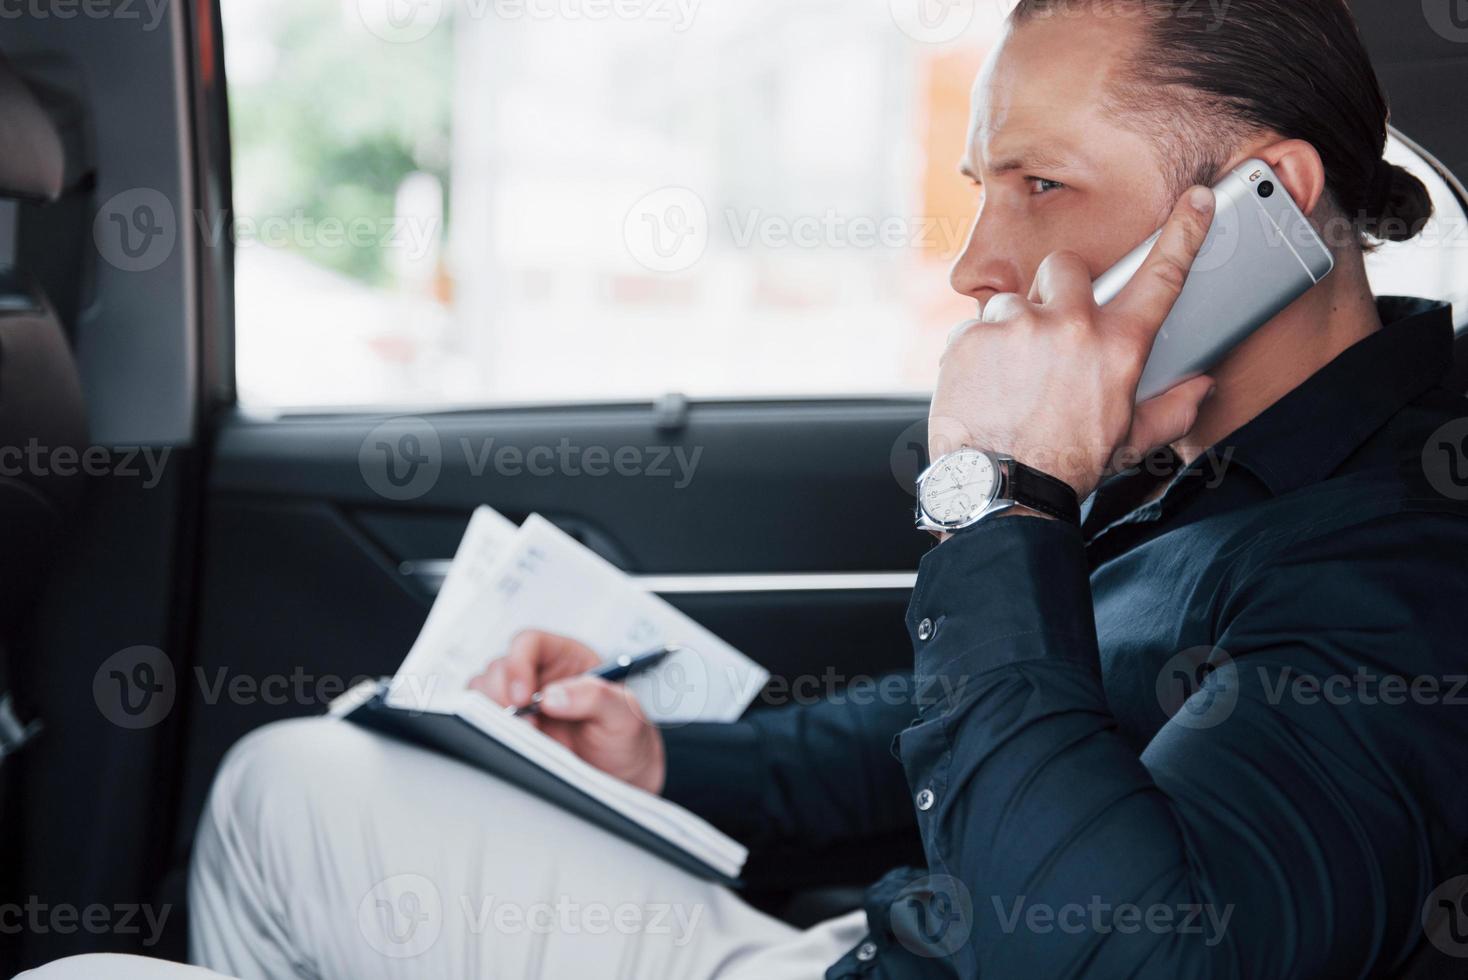 een jonge zakenman regelt zijn zaken met een notitieblok terwijl hij achter in de auto zit foto